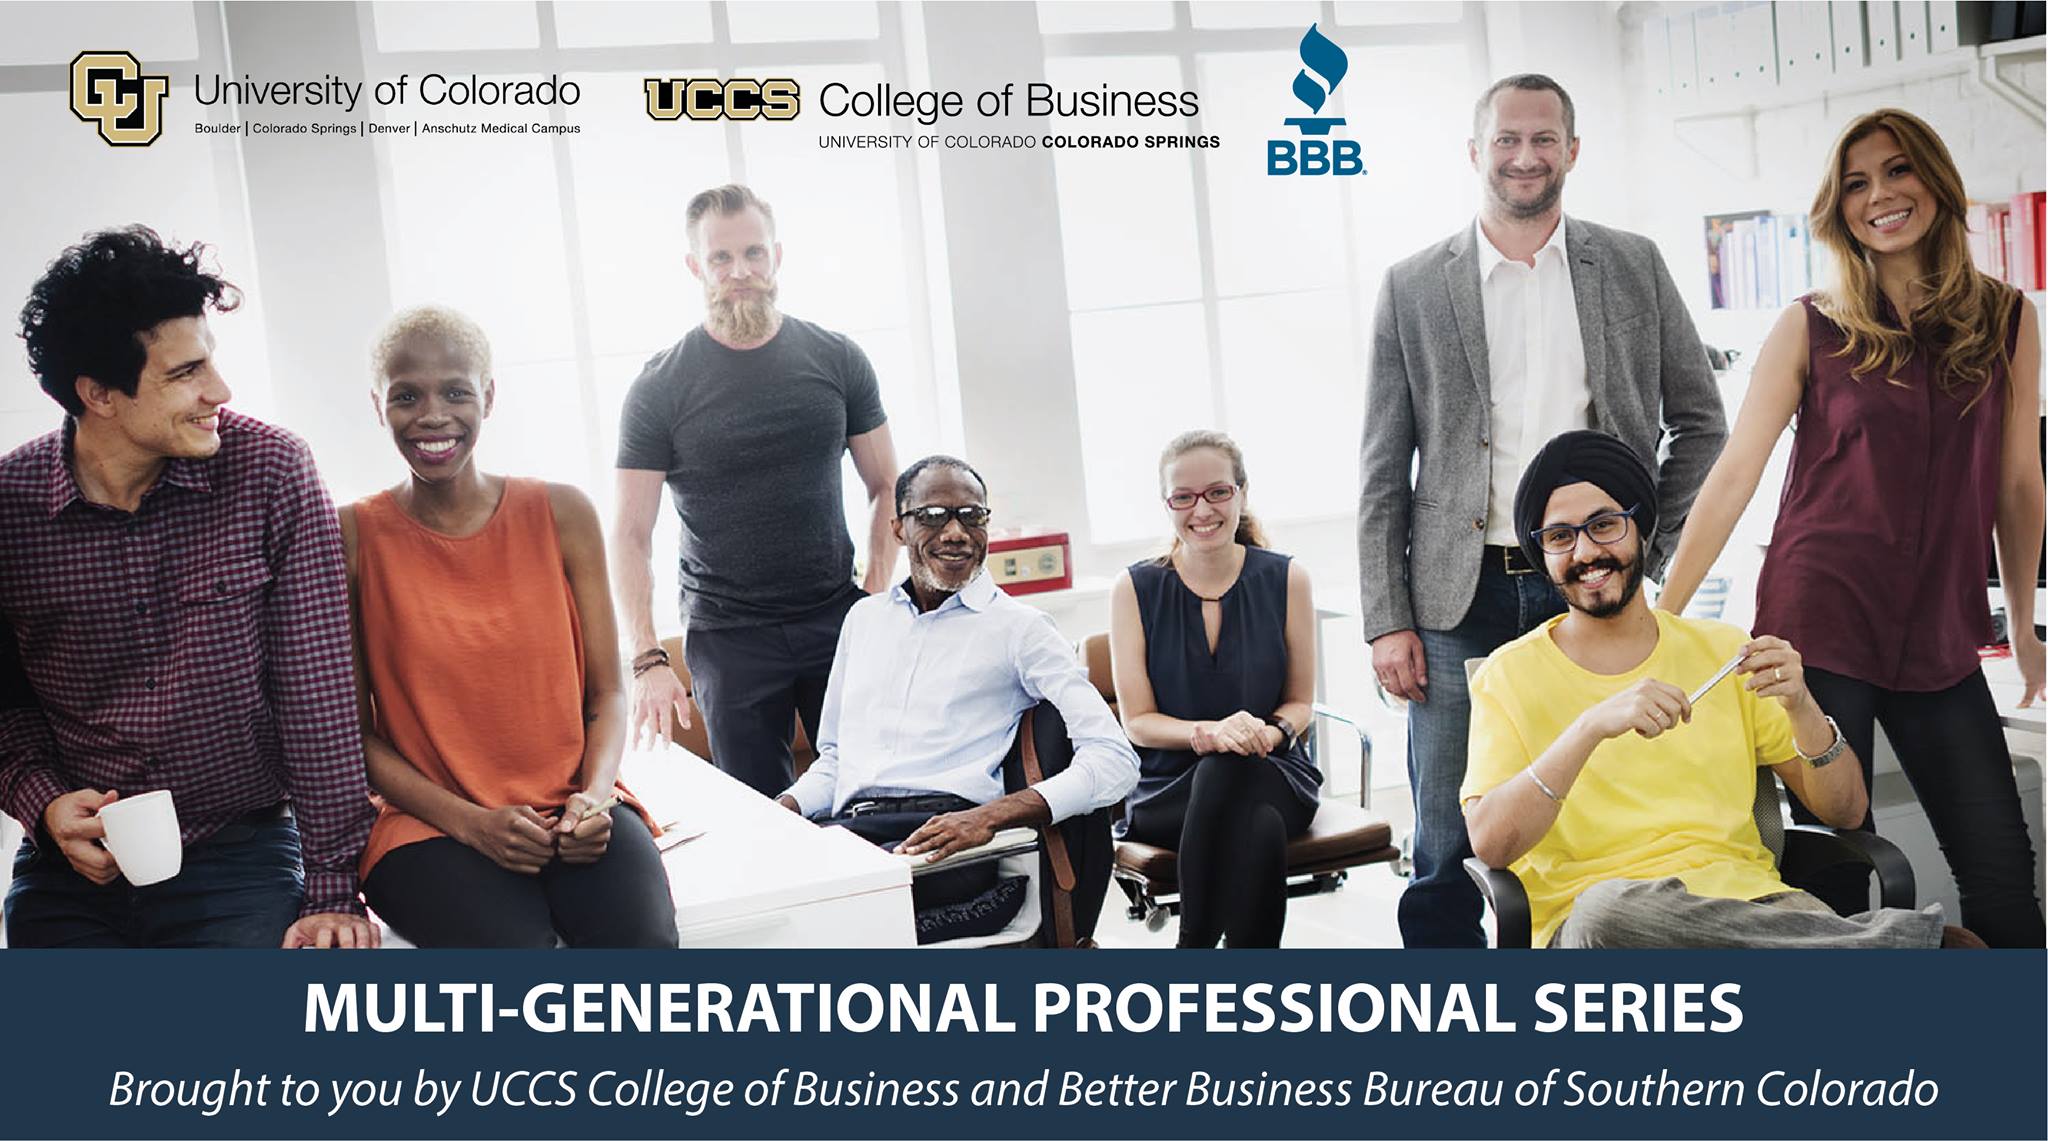 Multi-generational workforce series to aid businesses, job seekers